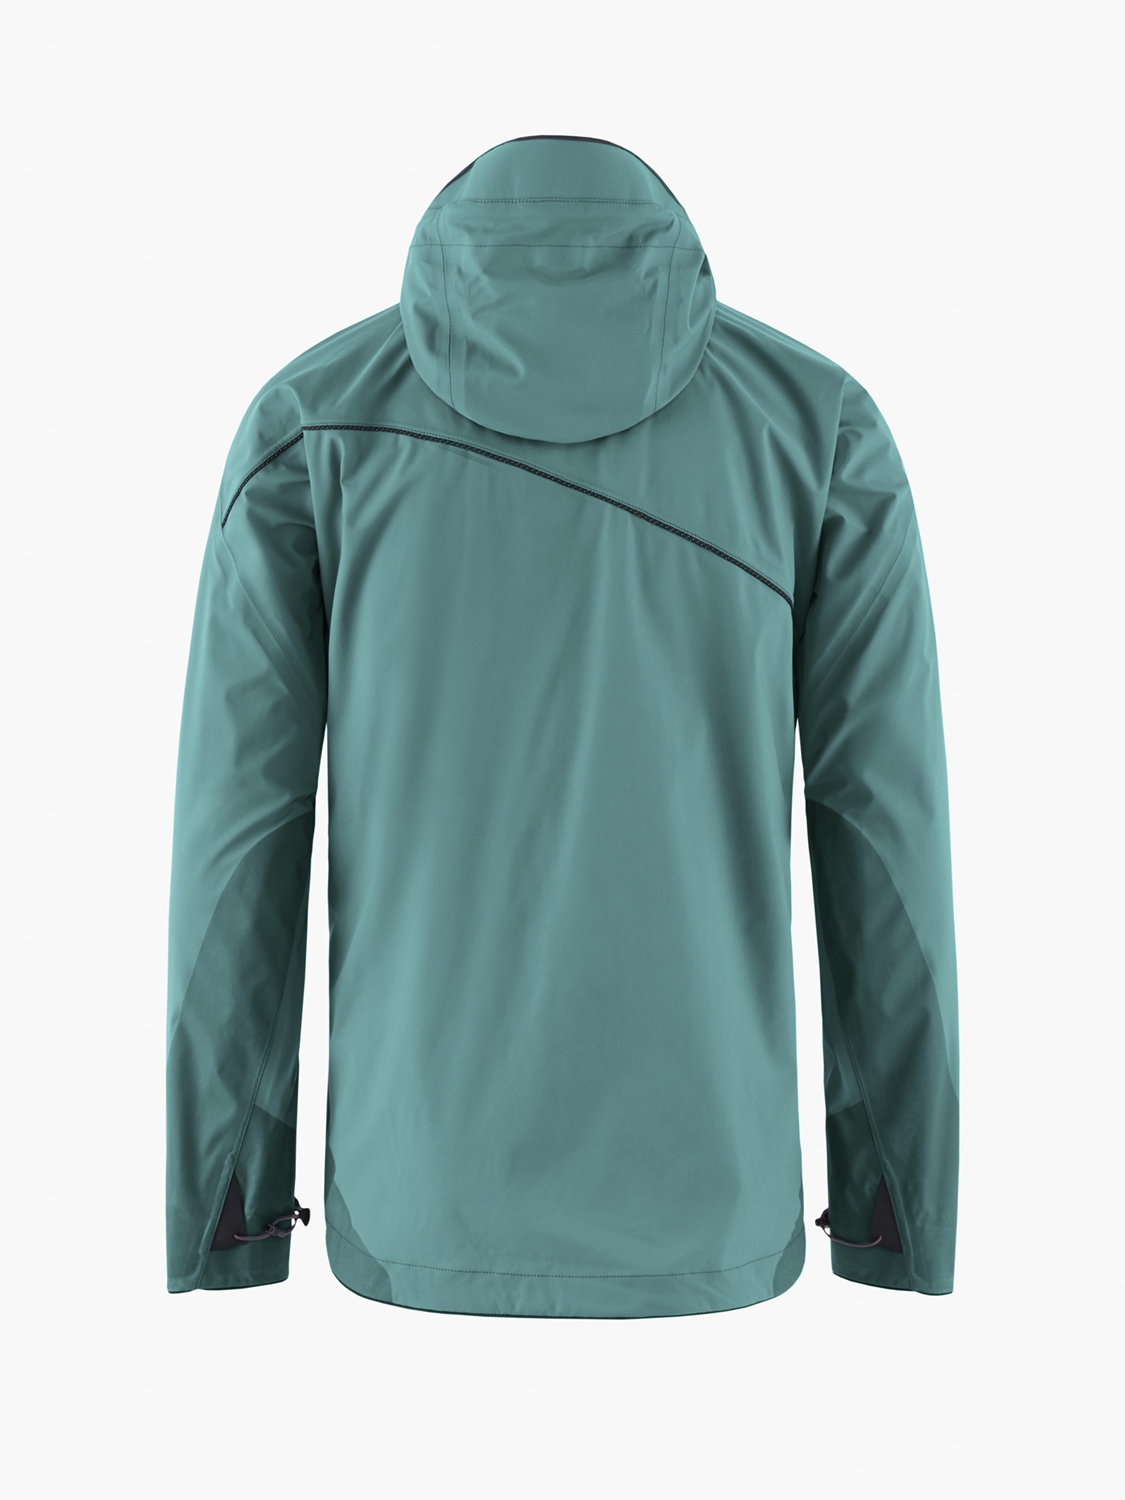 Allgrön 2.0 Shell Jacket, Men's | Frost Green - Klättermusen